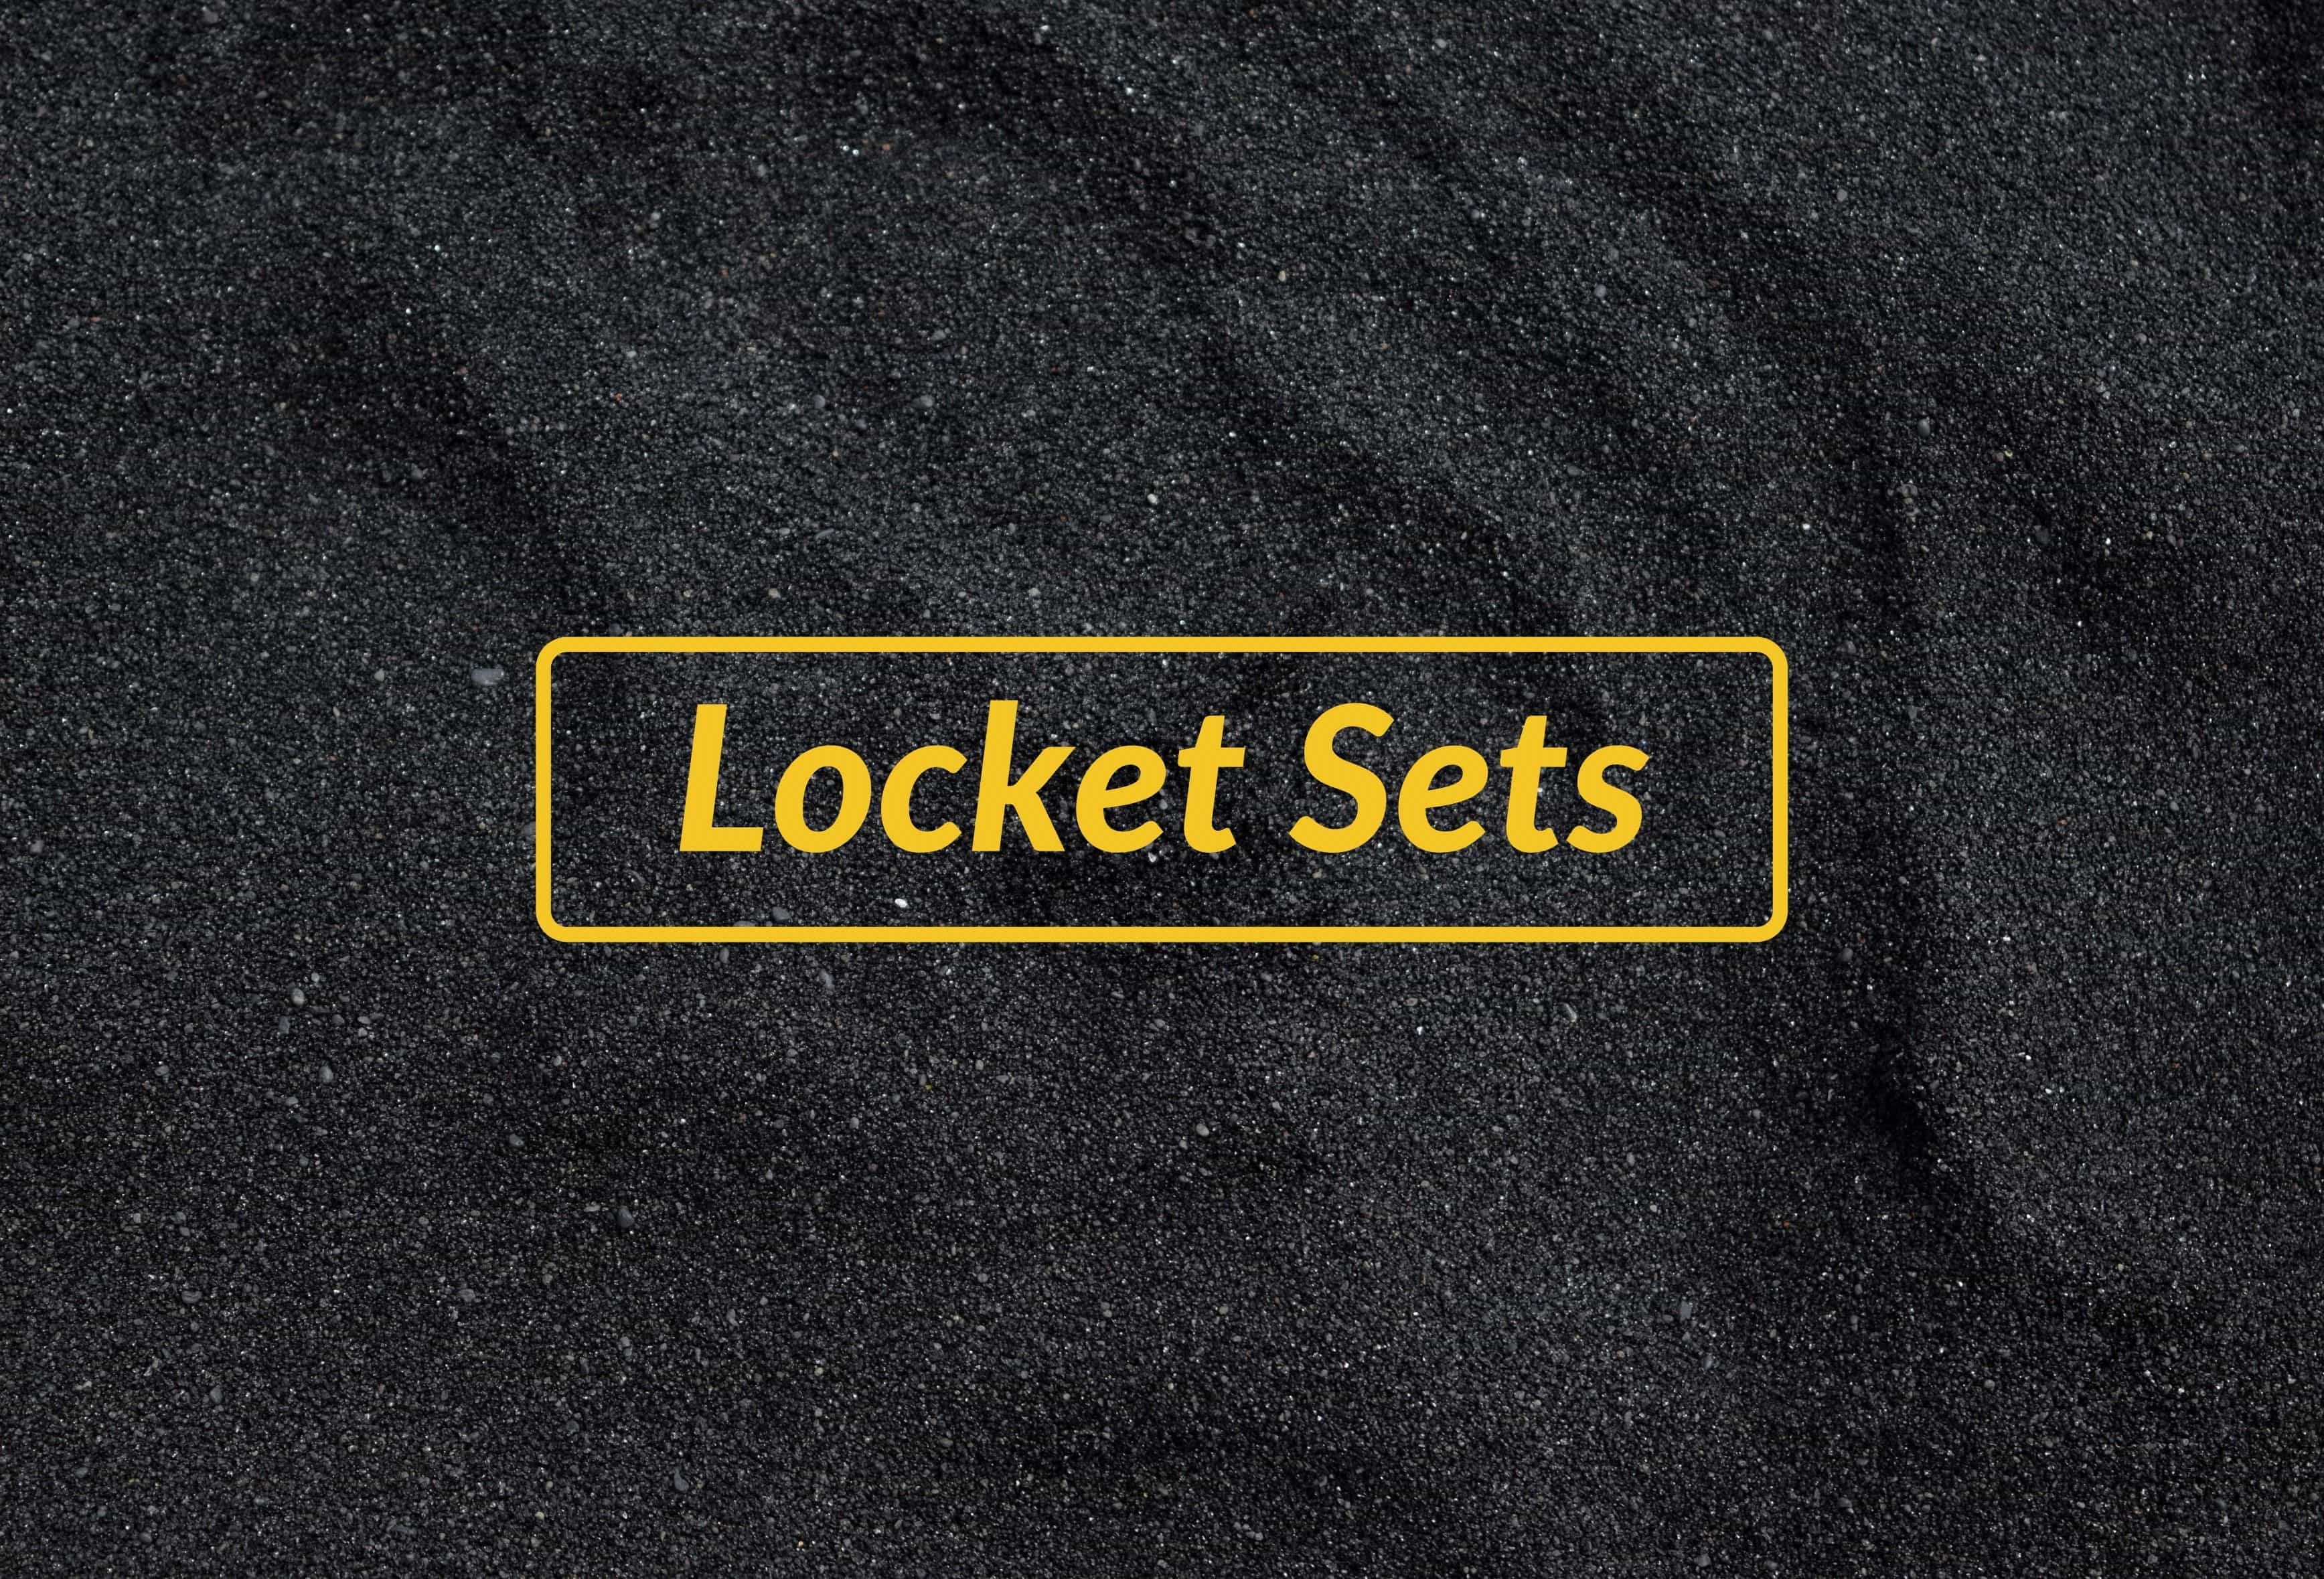 Locket Sets